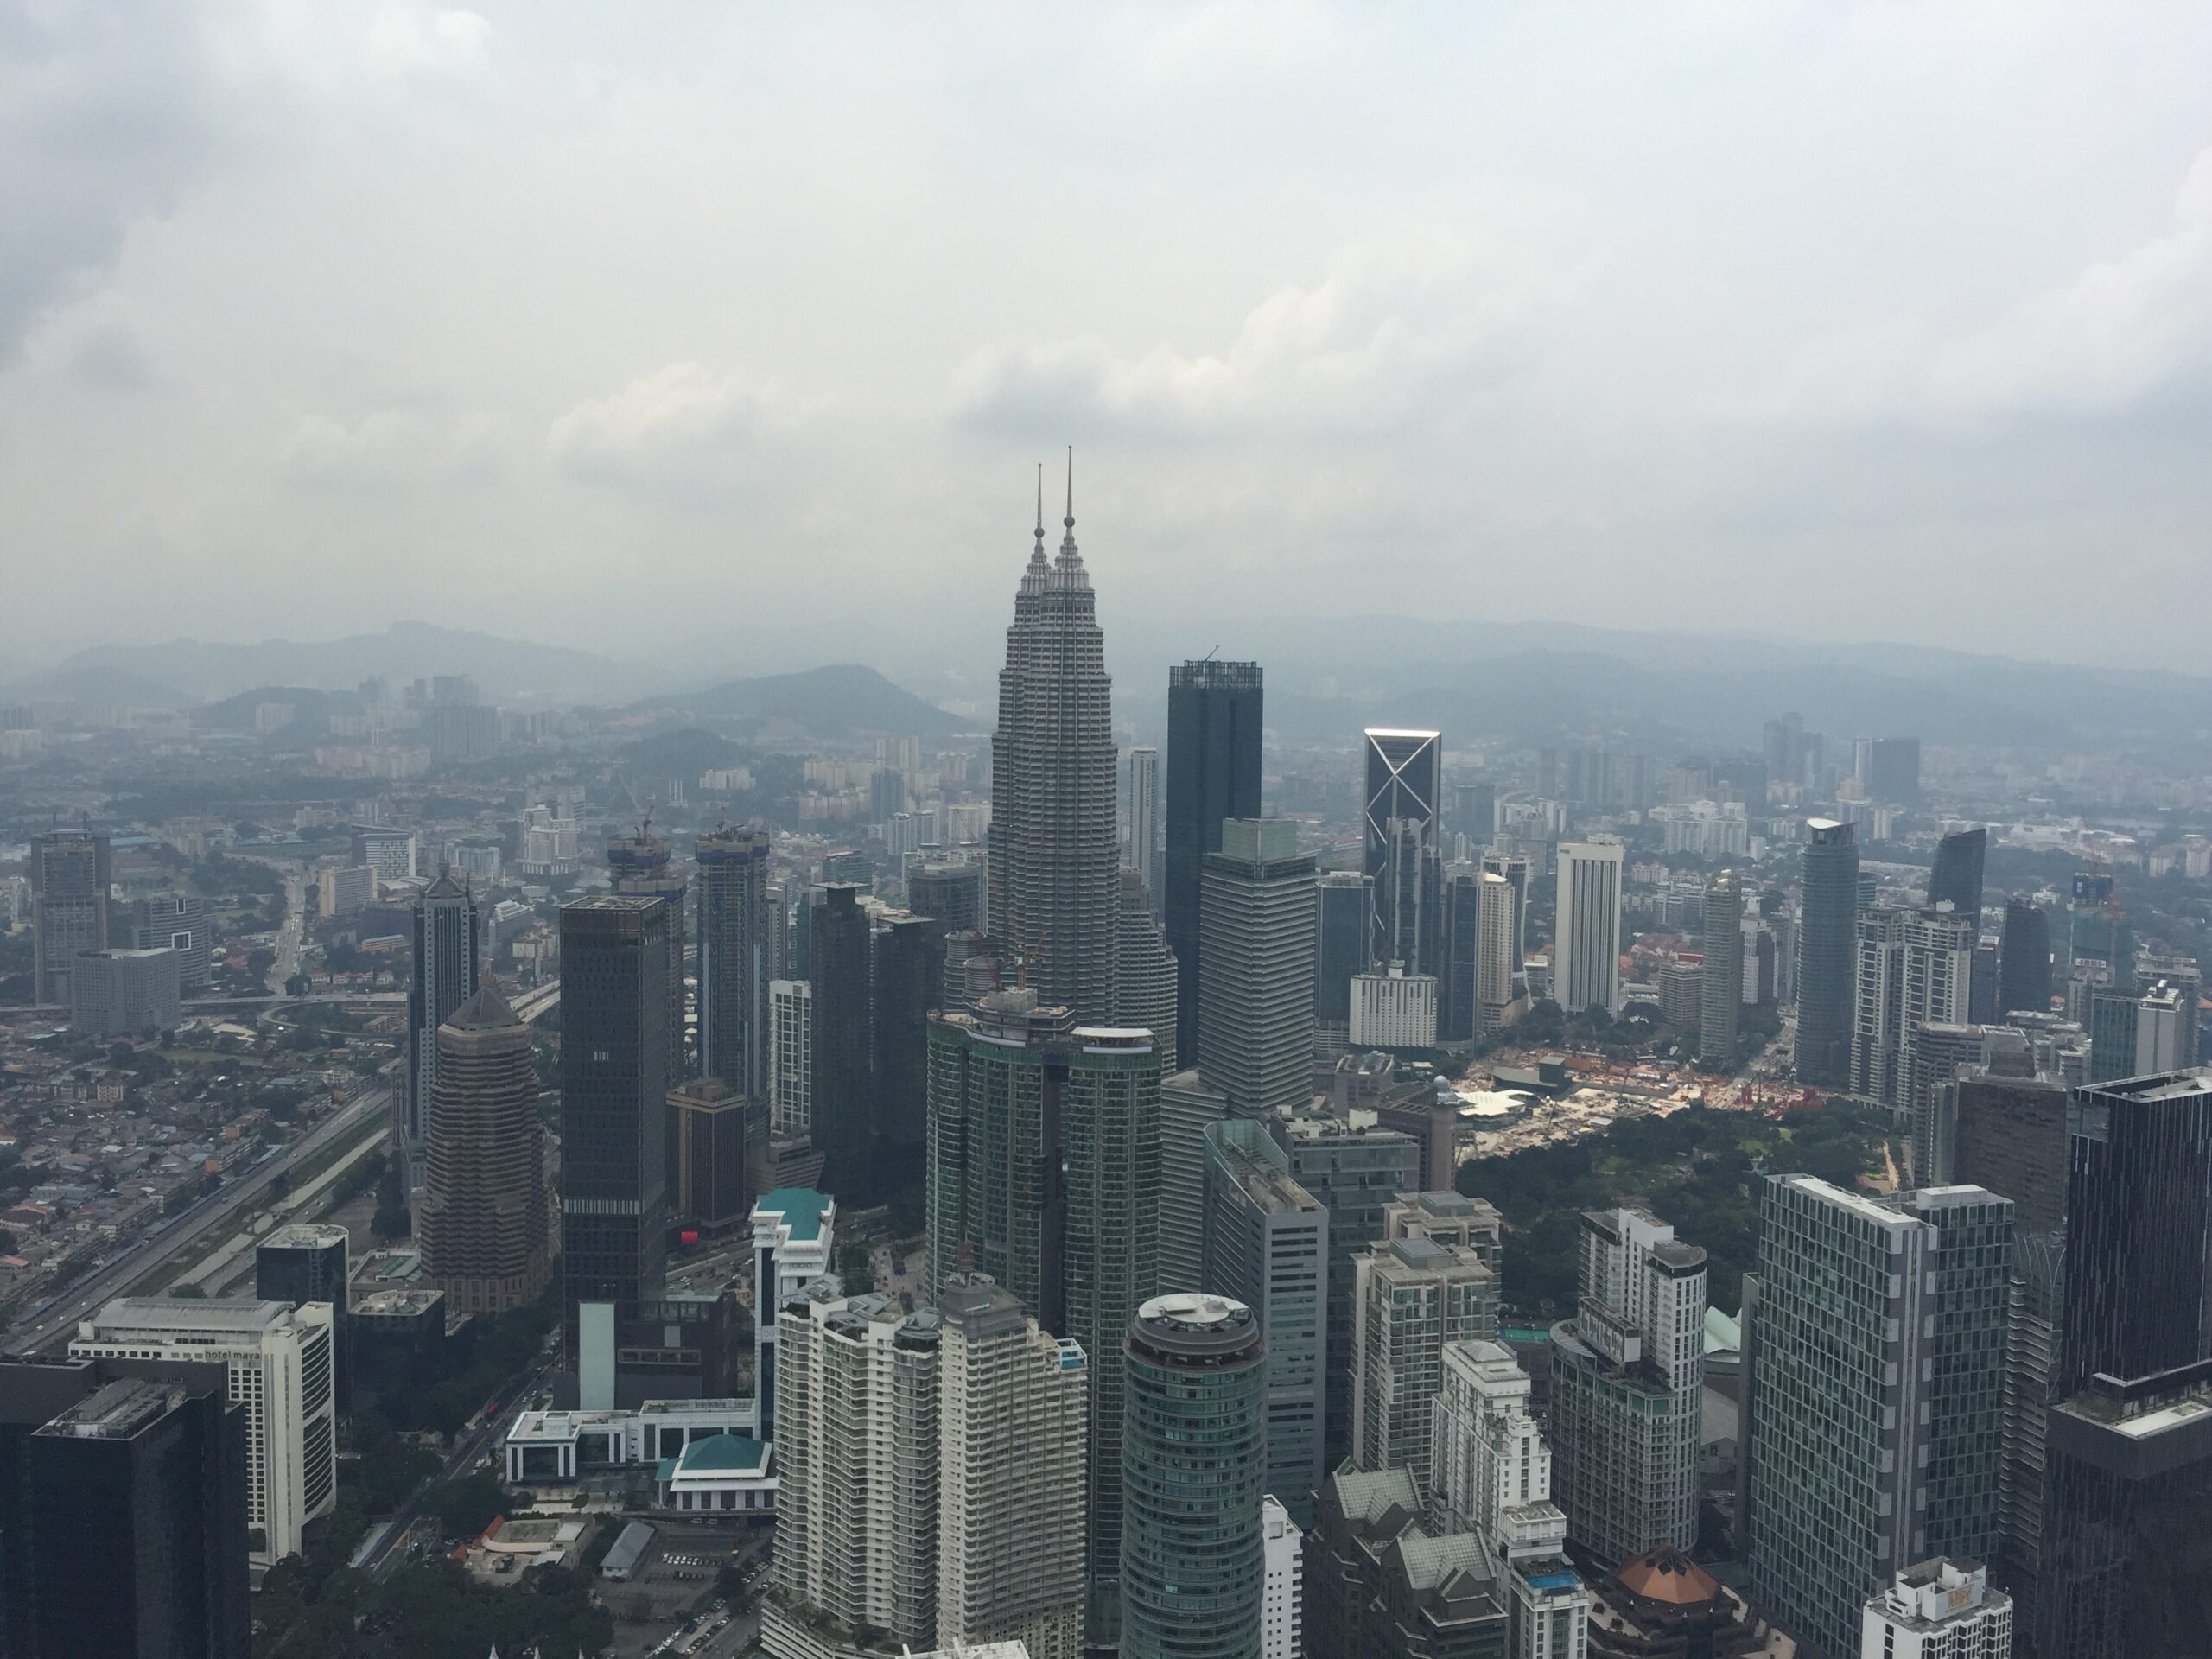 Kuala Lumpur, Asiens: Moderne Skyline, kulturelle Vielfalt und faszinierende Sehenswürdigkeiten.